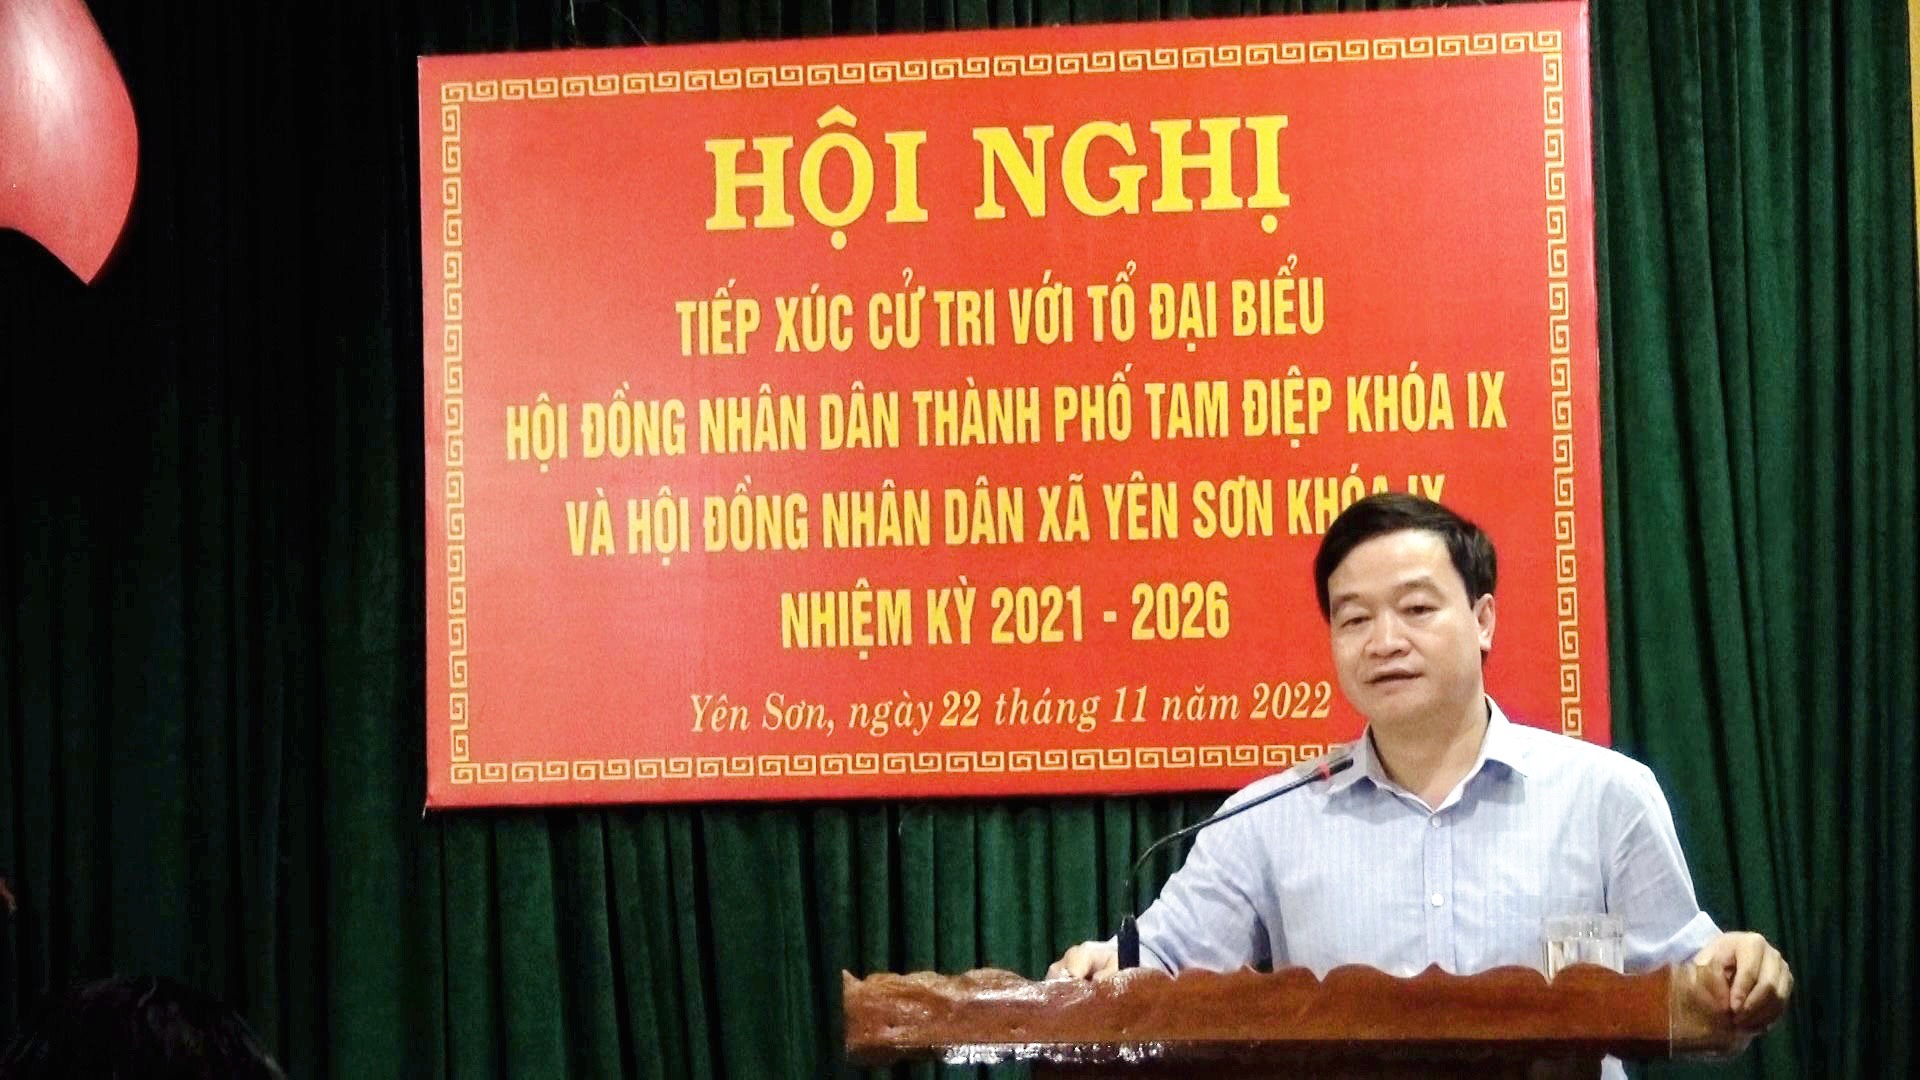 Hội nghị tiếp xúc cử tri giữa đại biểu HĐND thành phố khóa IX, đại biểu HĐND xã Yên Sơn khóa IX với cử tri trước kỳ họp thường lệ cuối năm 2022   